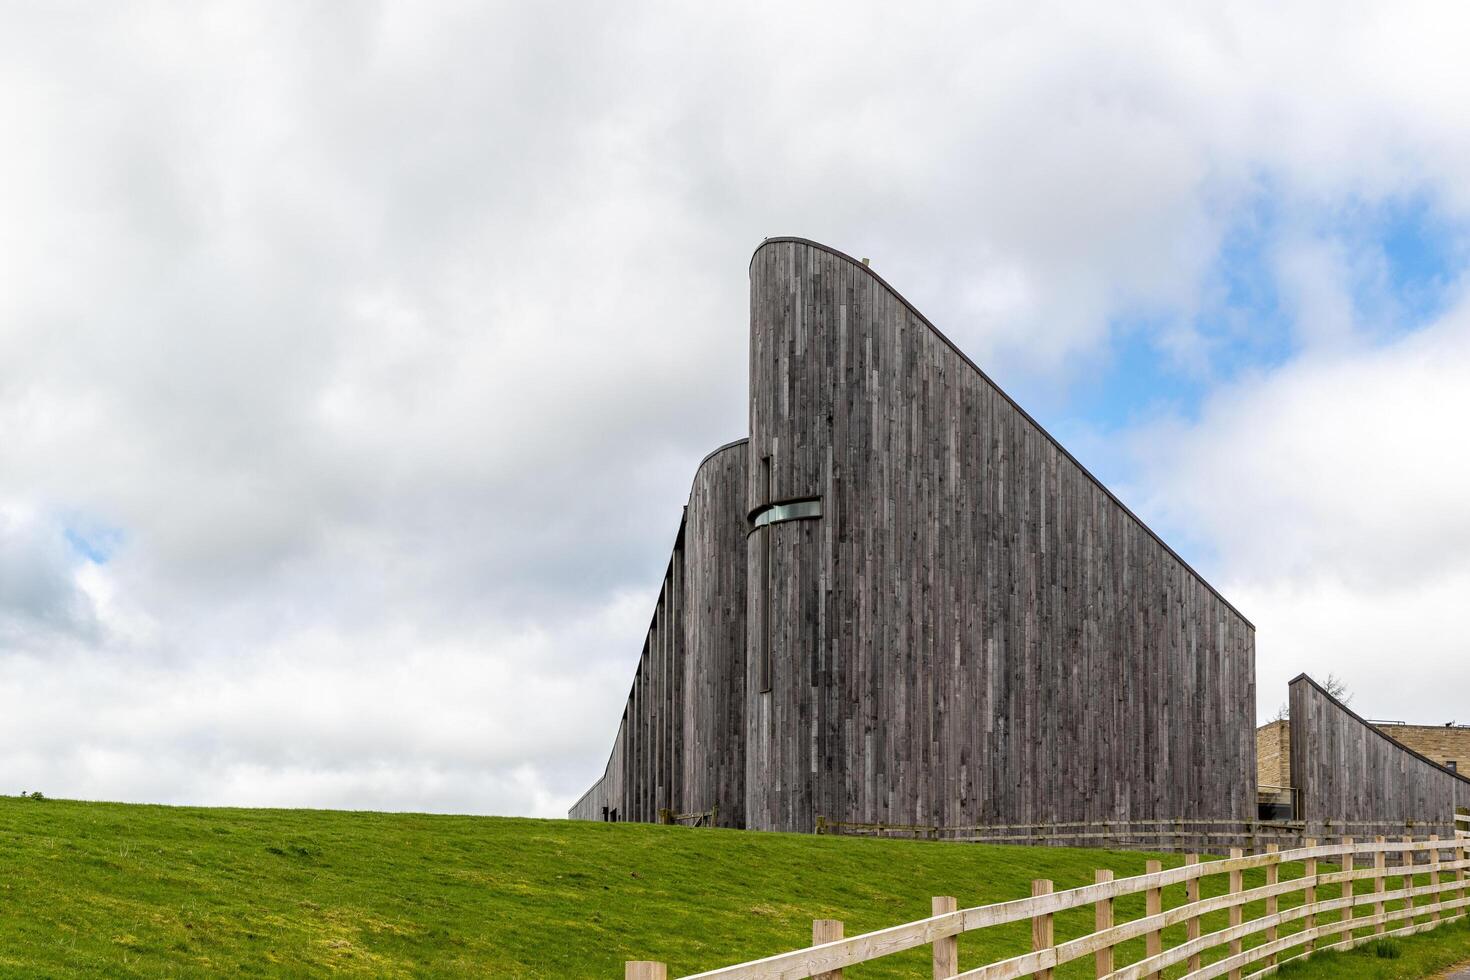 modern houten architectuur met gebogen ontwerp tegen een bewolkt lucht, omringd door groen gras en een schutting. foto